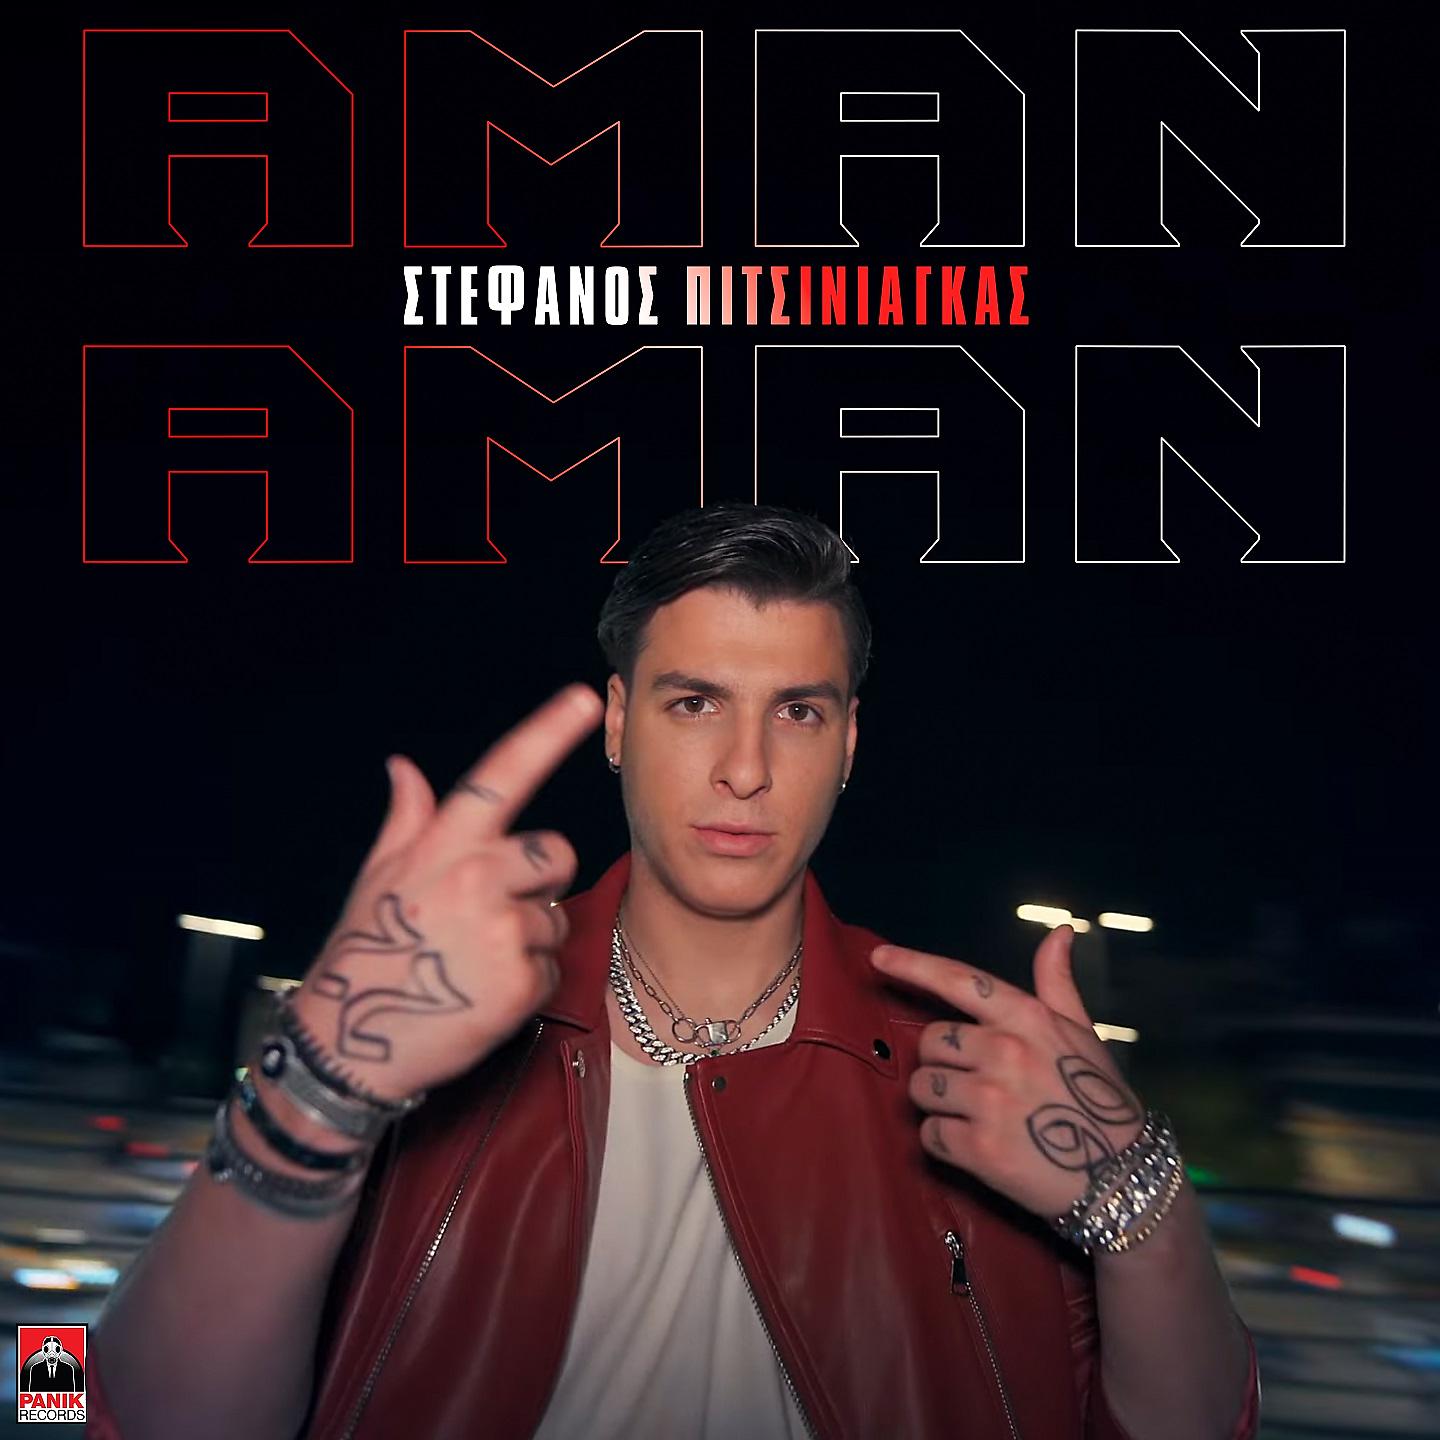 Постер альбома Aman Aman